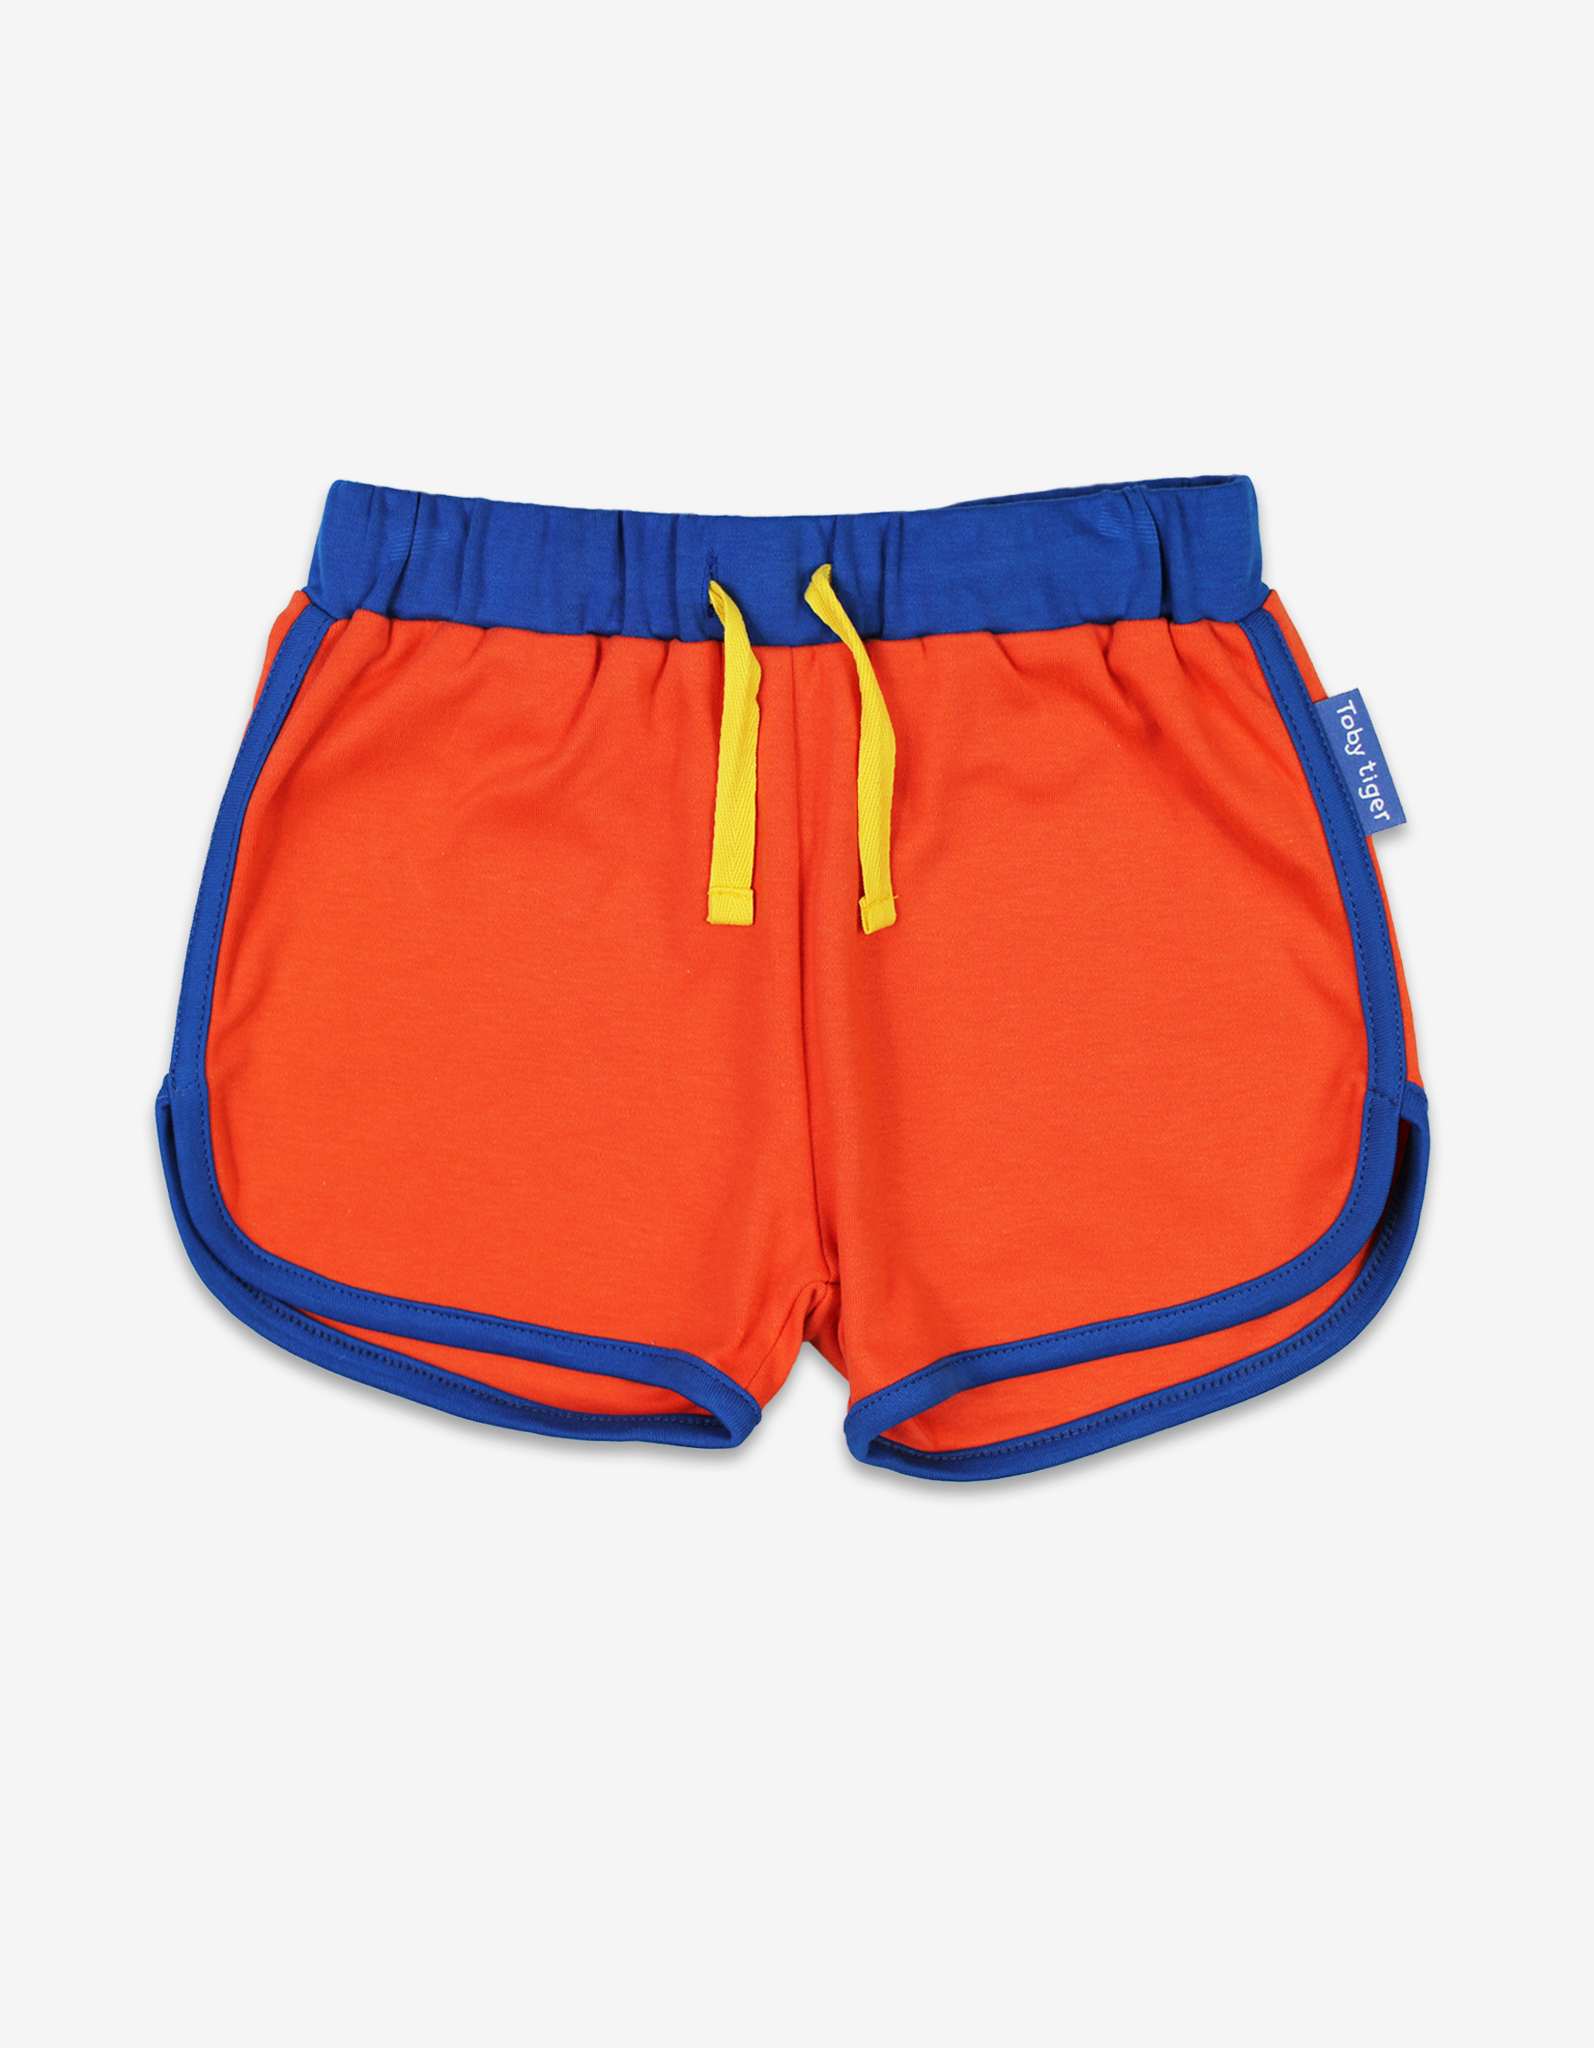 Organic Orange Running Shorts - 5